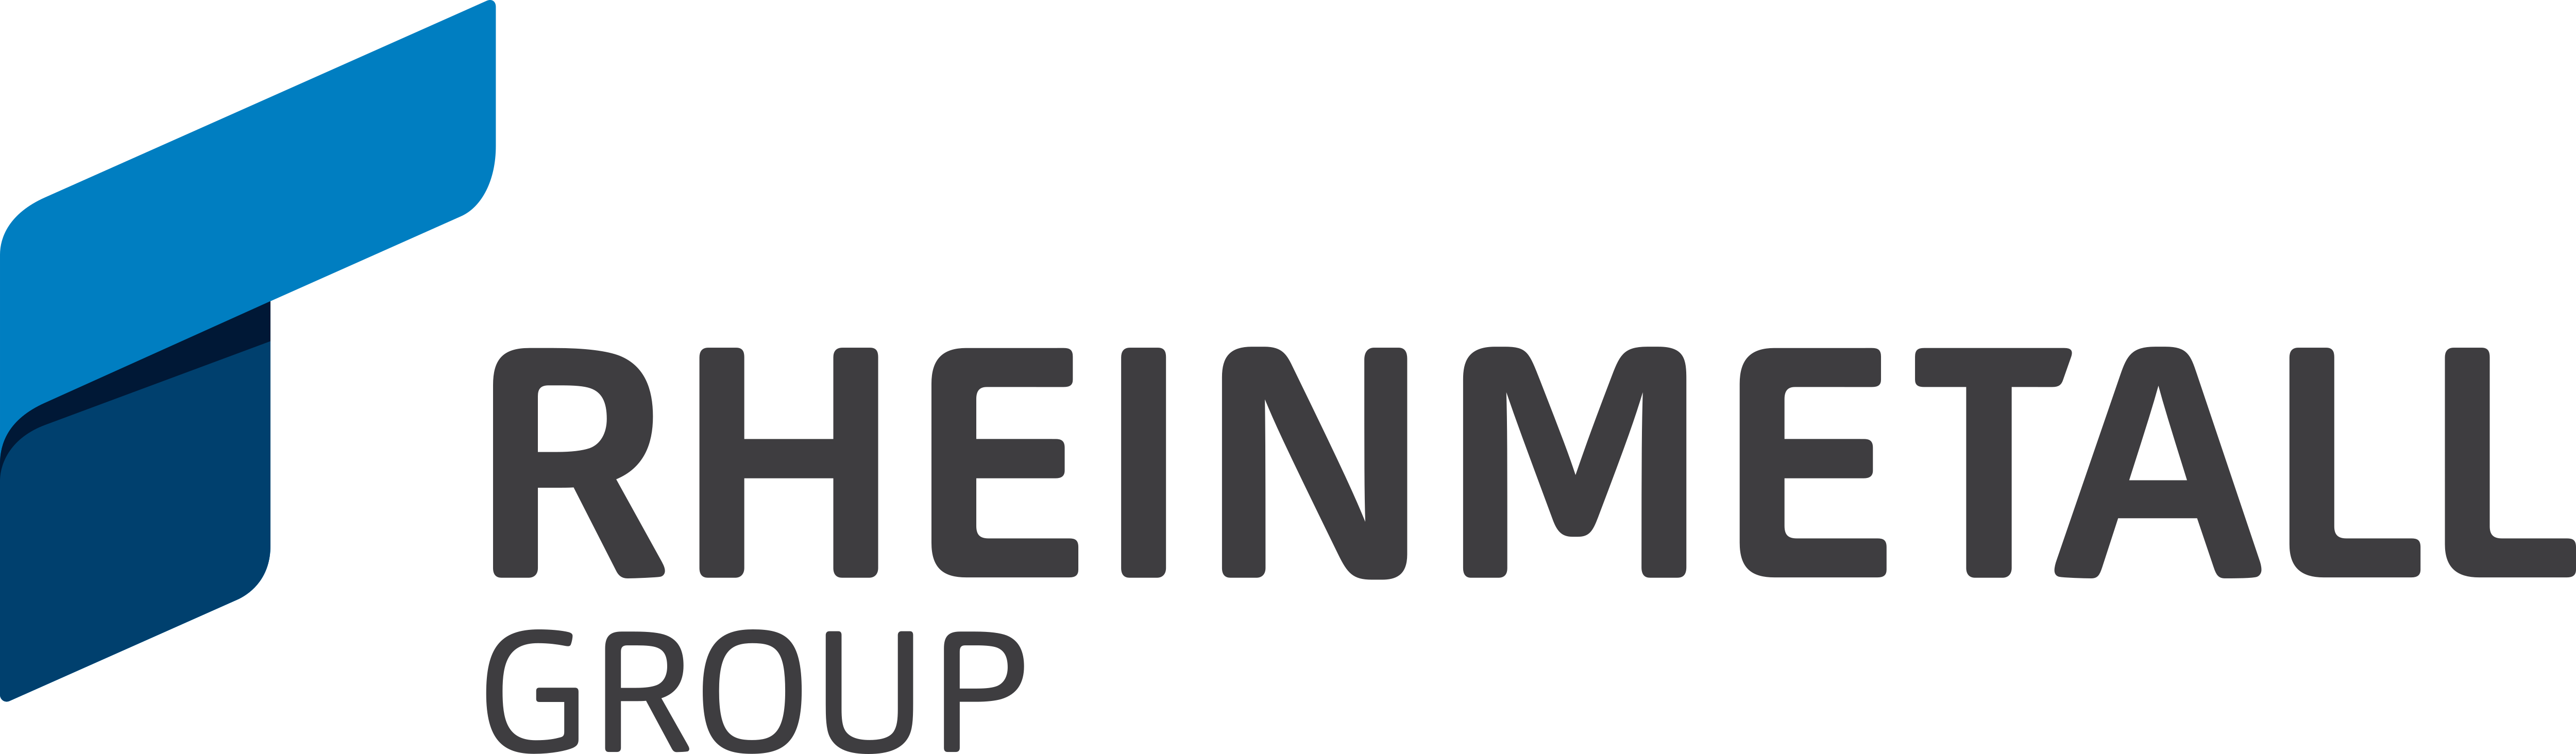 Rheinmetall Logo Im Transparenten Png Und Vektorisier - vrogue.co